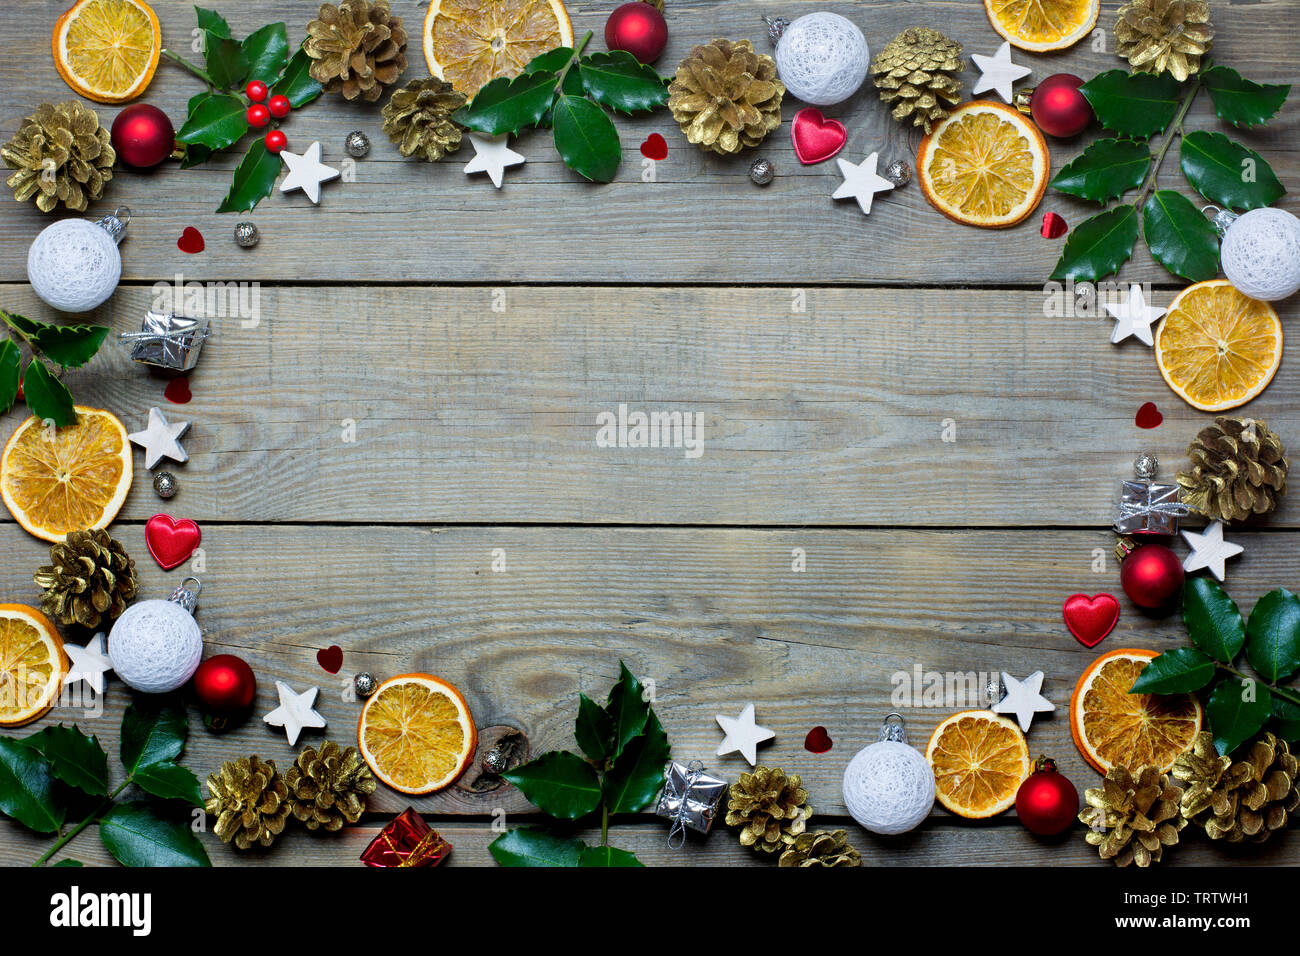 Weihnachten Zusammensetzung mit Orangenscheiben, Kegel, heiligen, Sterne, kleine Geschenkboxen, rote und weiße Kugeln und Herzen auf Holz- Hintergrund Stockfoto